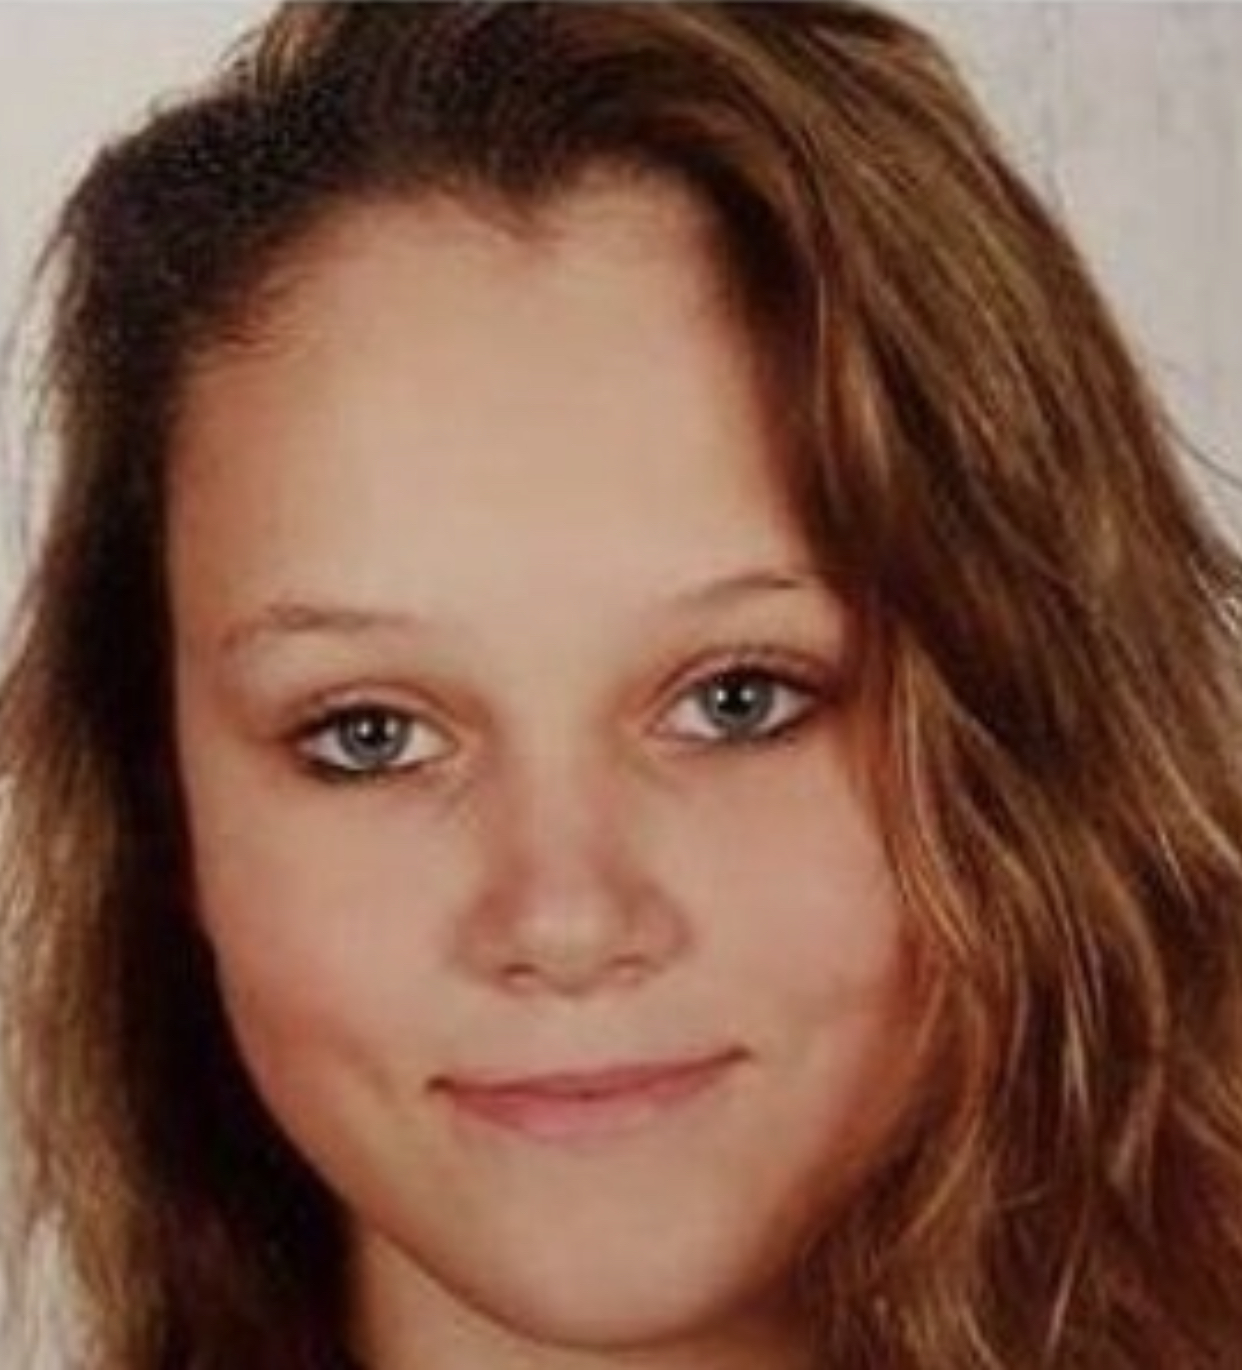 Vermist – Roxanne Ultleg 14 jaar